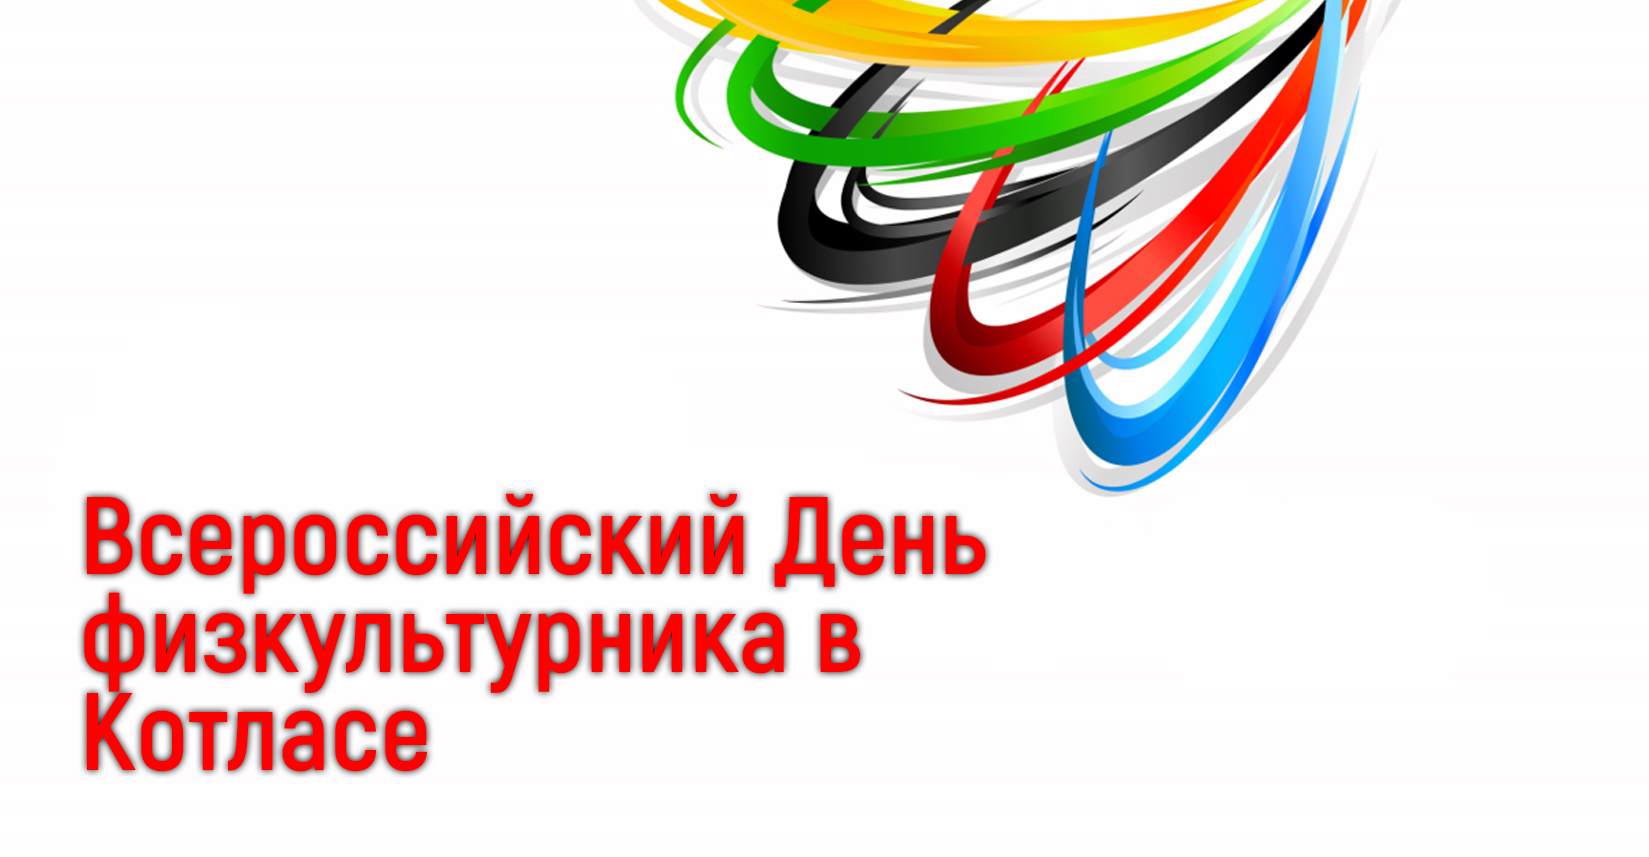 Всероссийский День физкультурника в Котласе